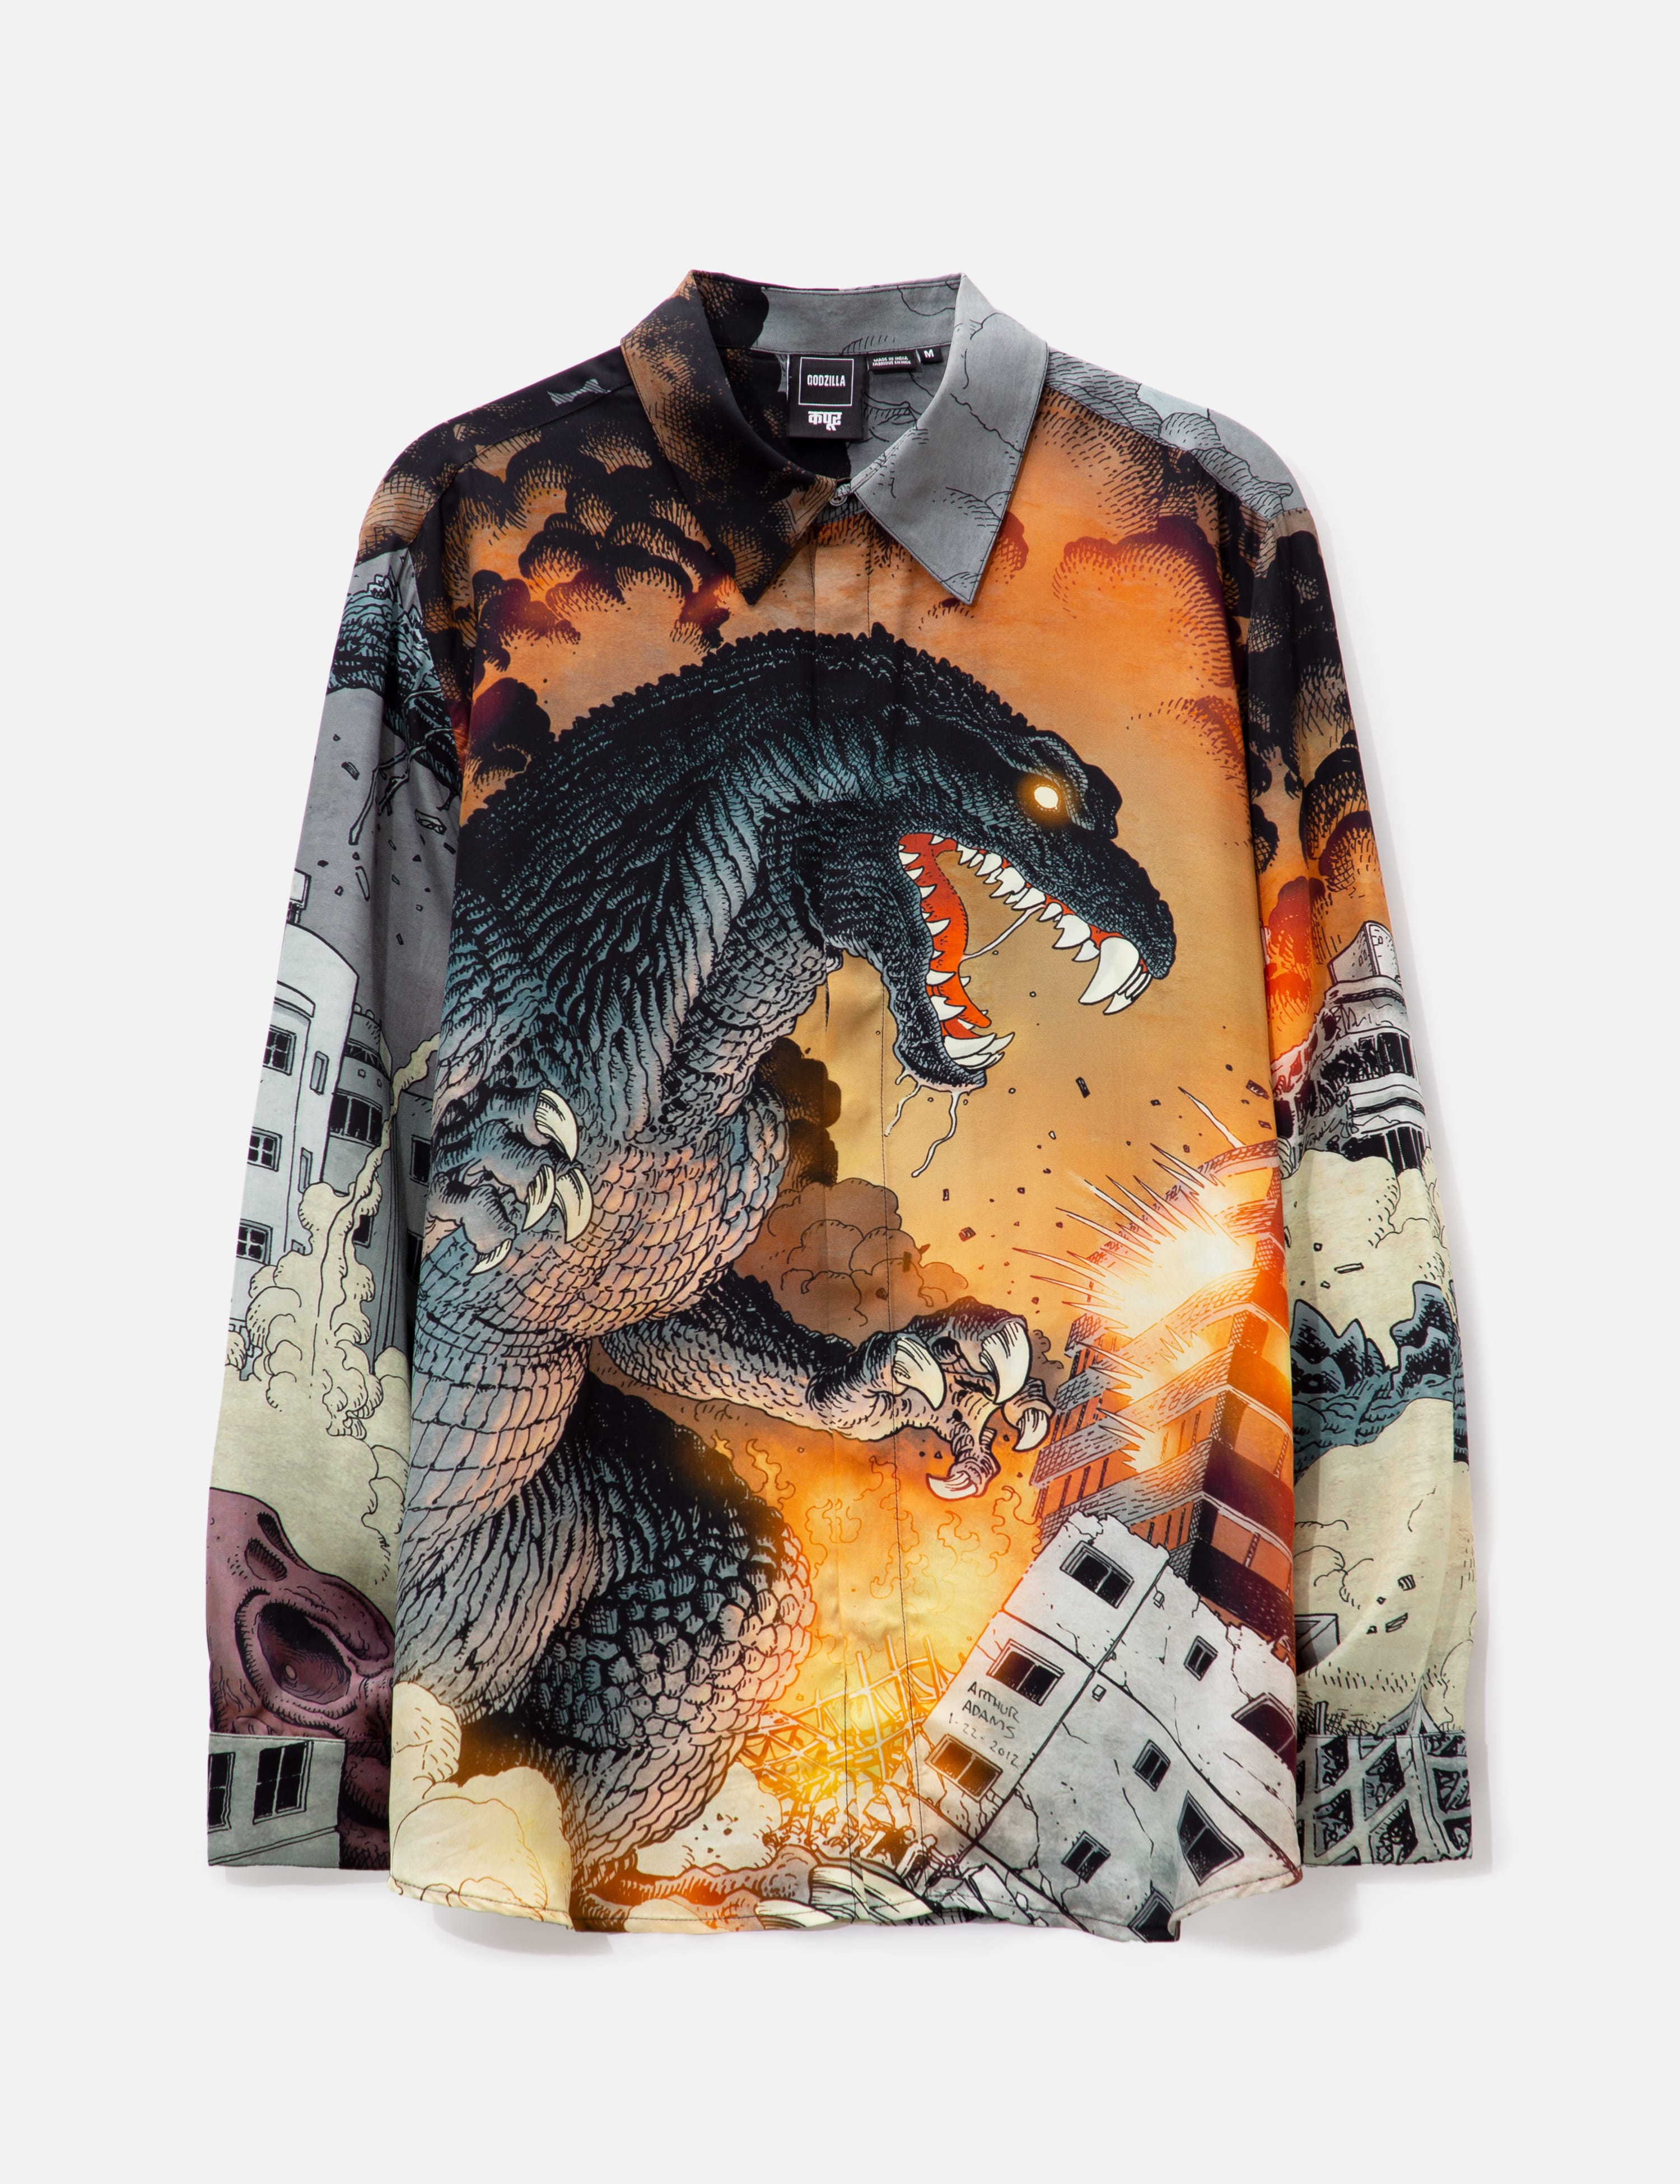 DHRUV KAPOOR - Godzilla X Dhruv Kapoor Engineered Shirt | HBX